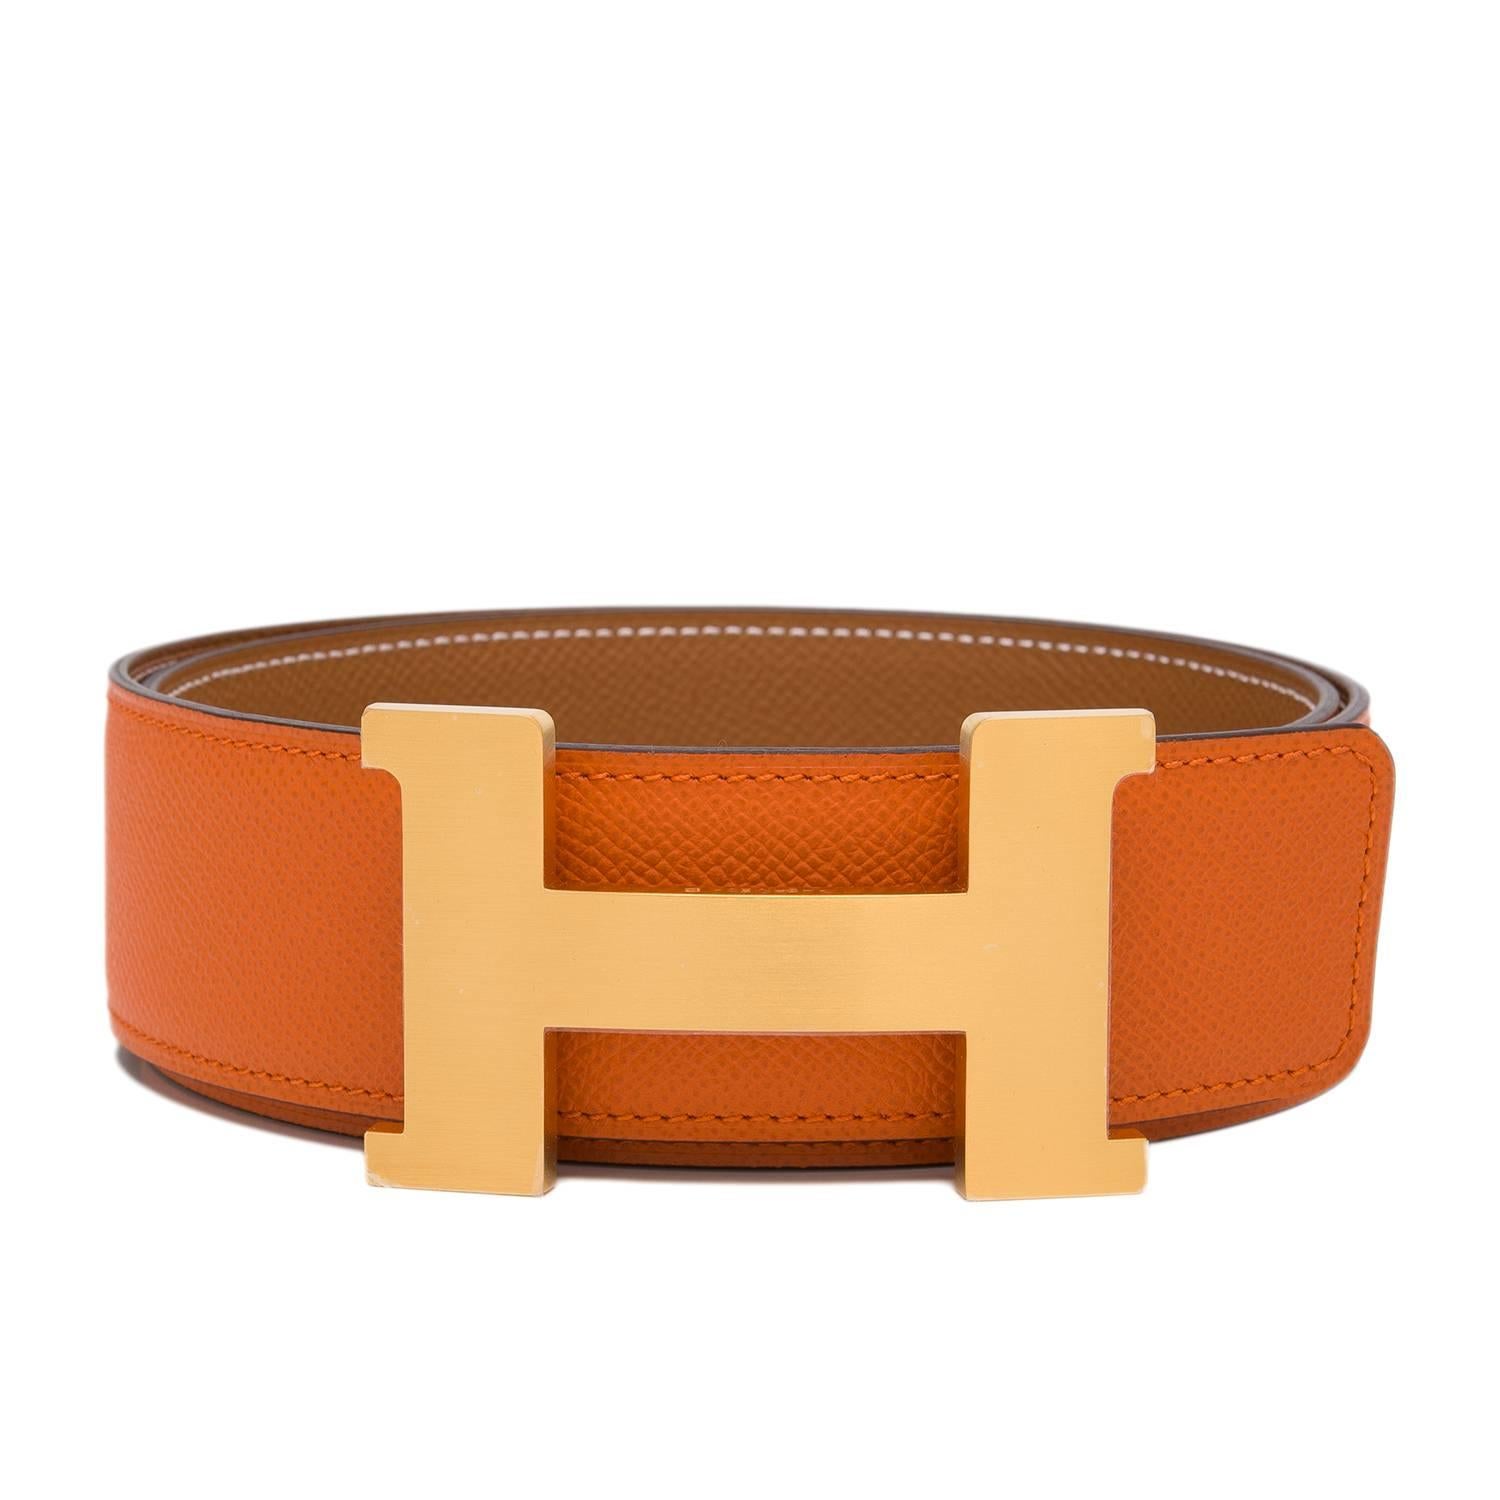 Hermes 42mm Reversible Orange/Gold Constance H Belt Brushed Gold Buckle 85 cm